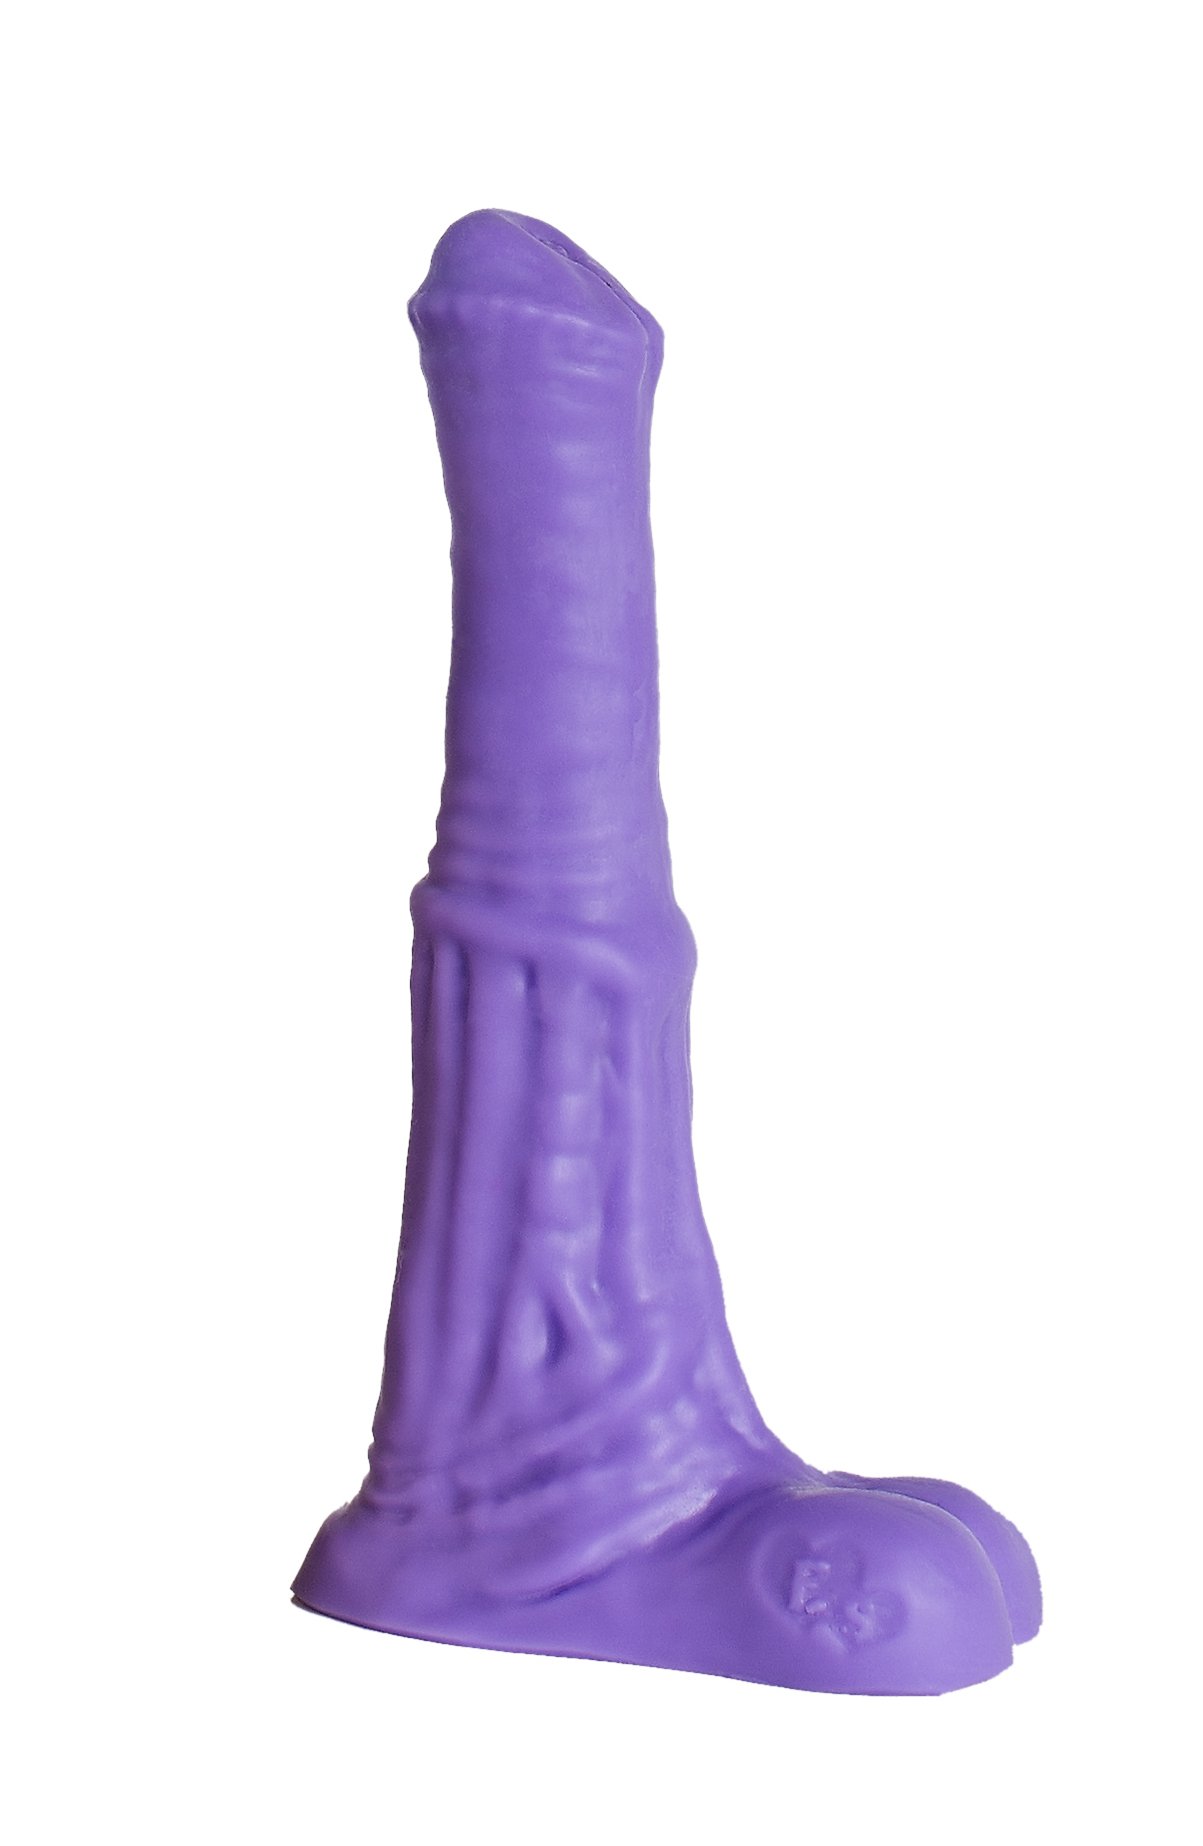 Фаллоимитатор реалистичный Пегас Micro, фиолетовый, 15 см